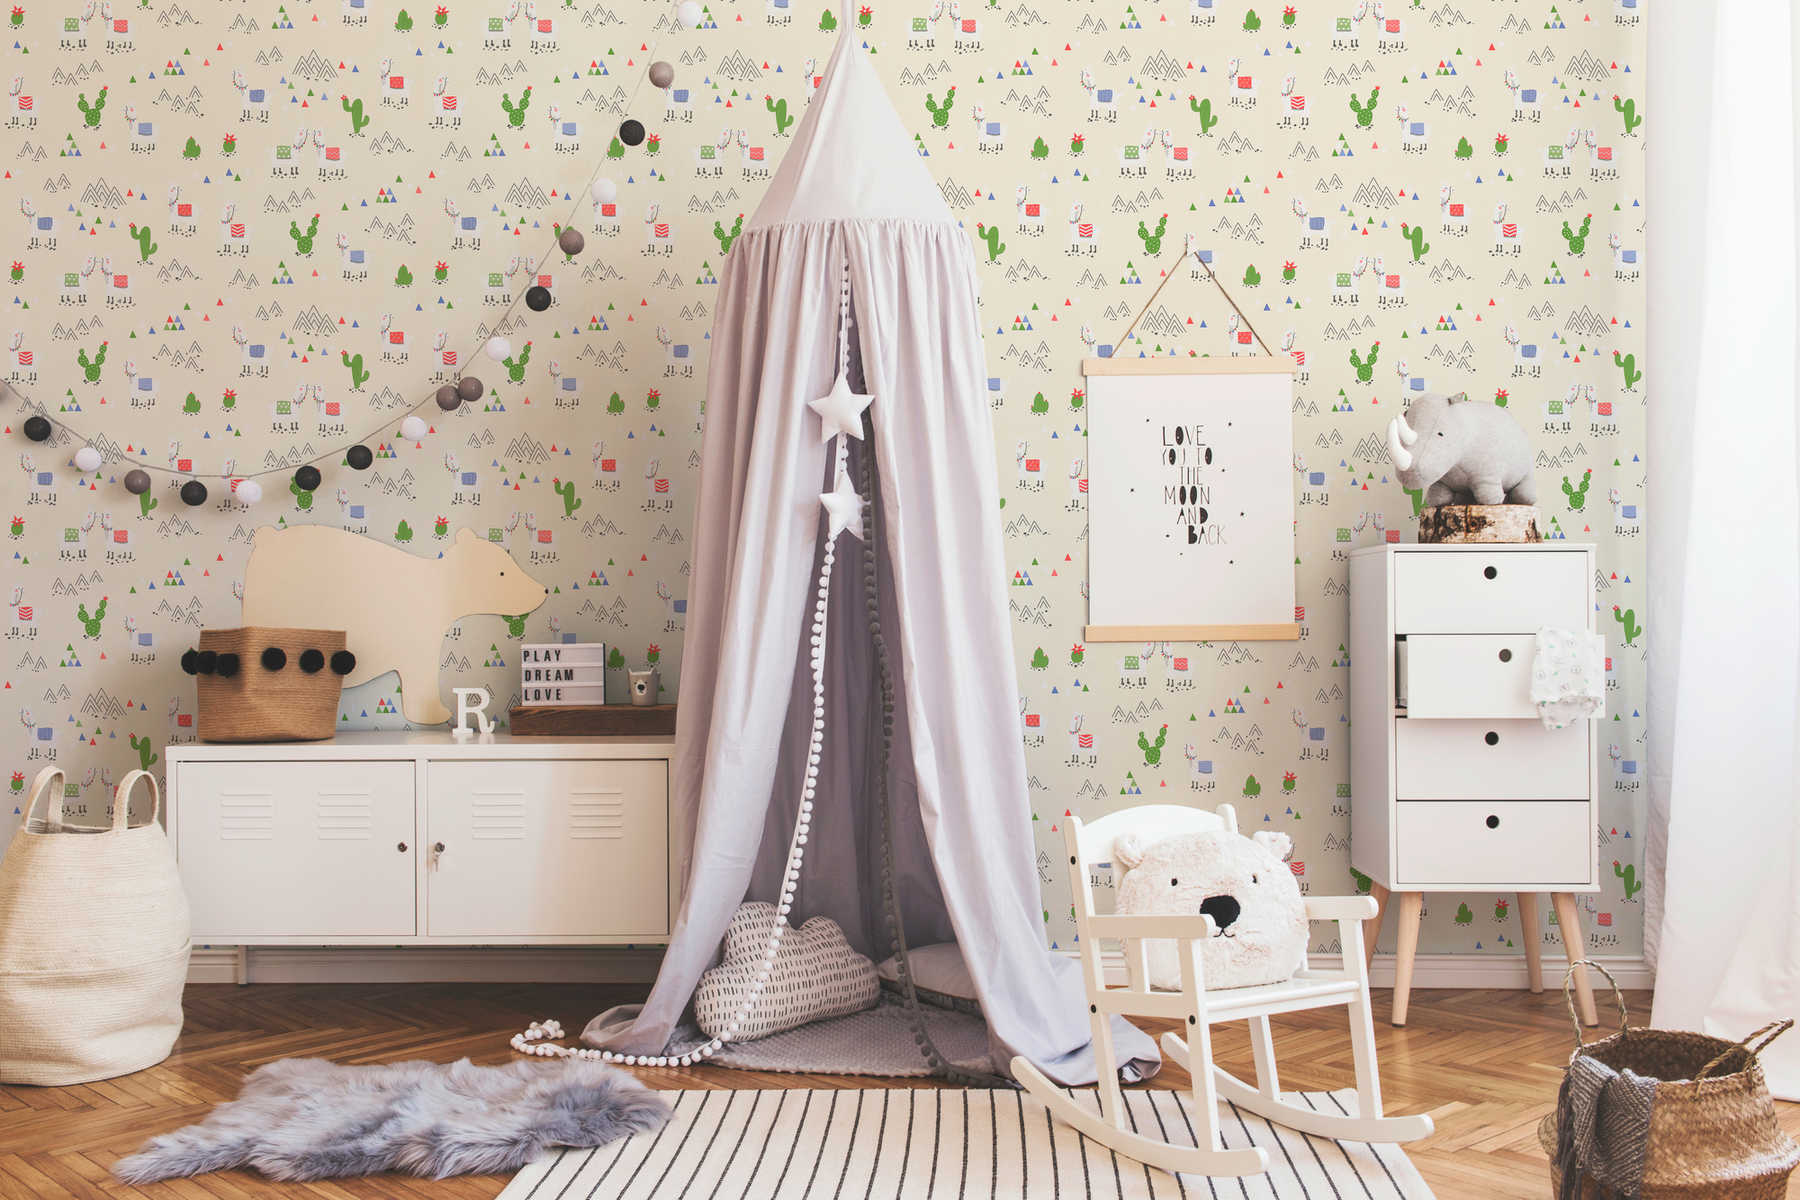             Papel pintado de Llama para habitación infantil en estilo cómic - beige, crema
        